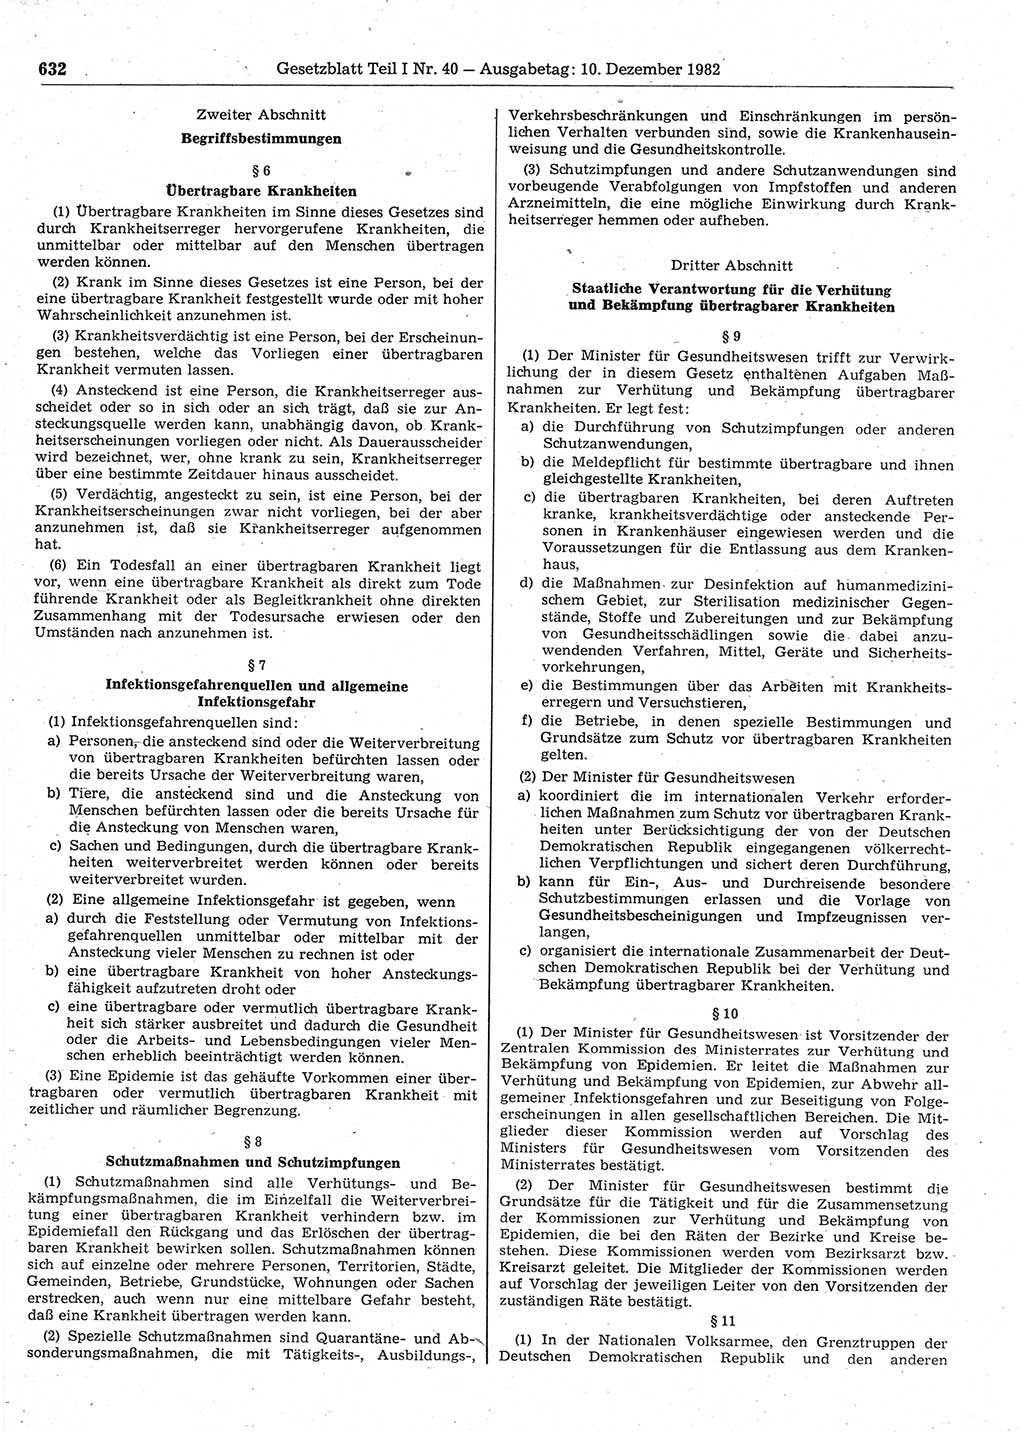 Gesetzblatt (GBl.) der Deutschen Demokratischen Republik (DDR) Teil Ⅰ 1982, Seite 632 (GBl. DDR Ⅰ 1982, S. 632)